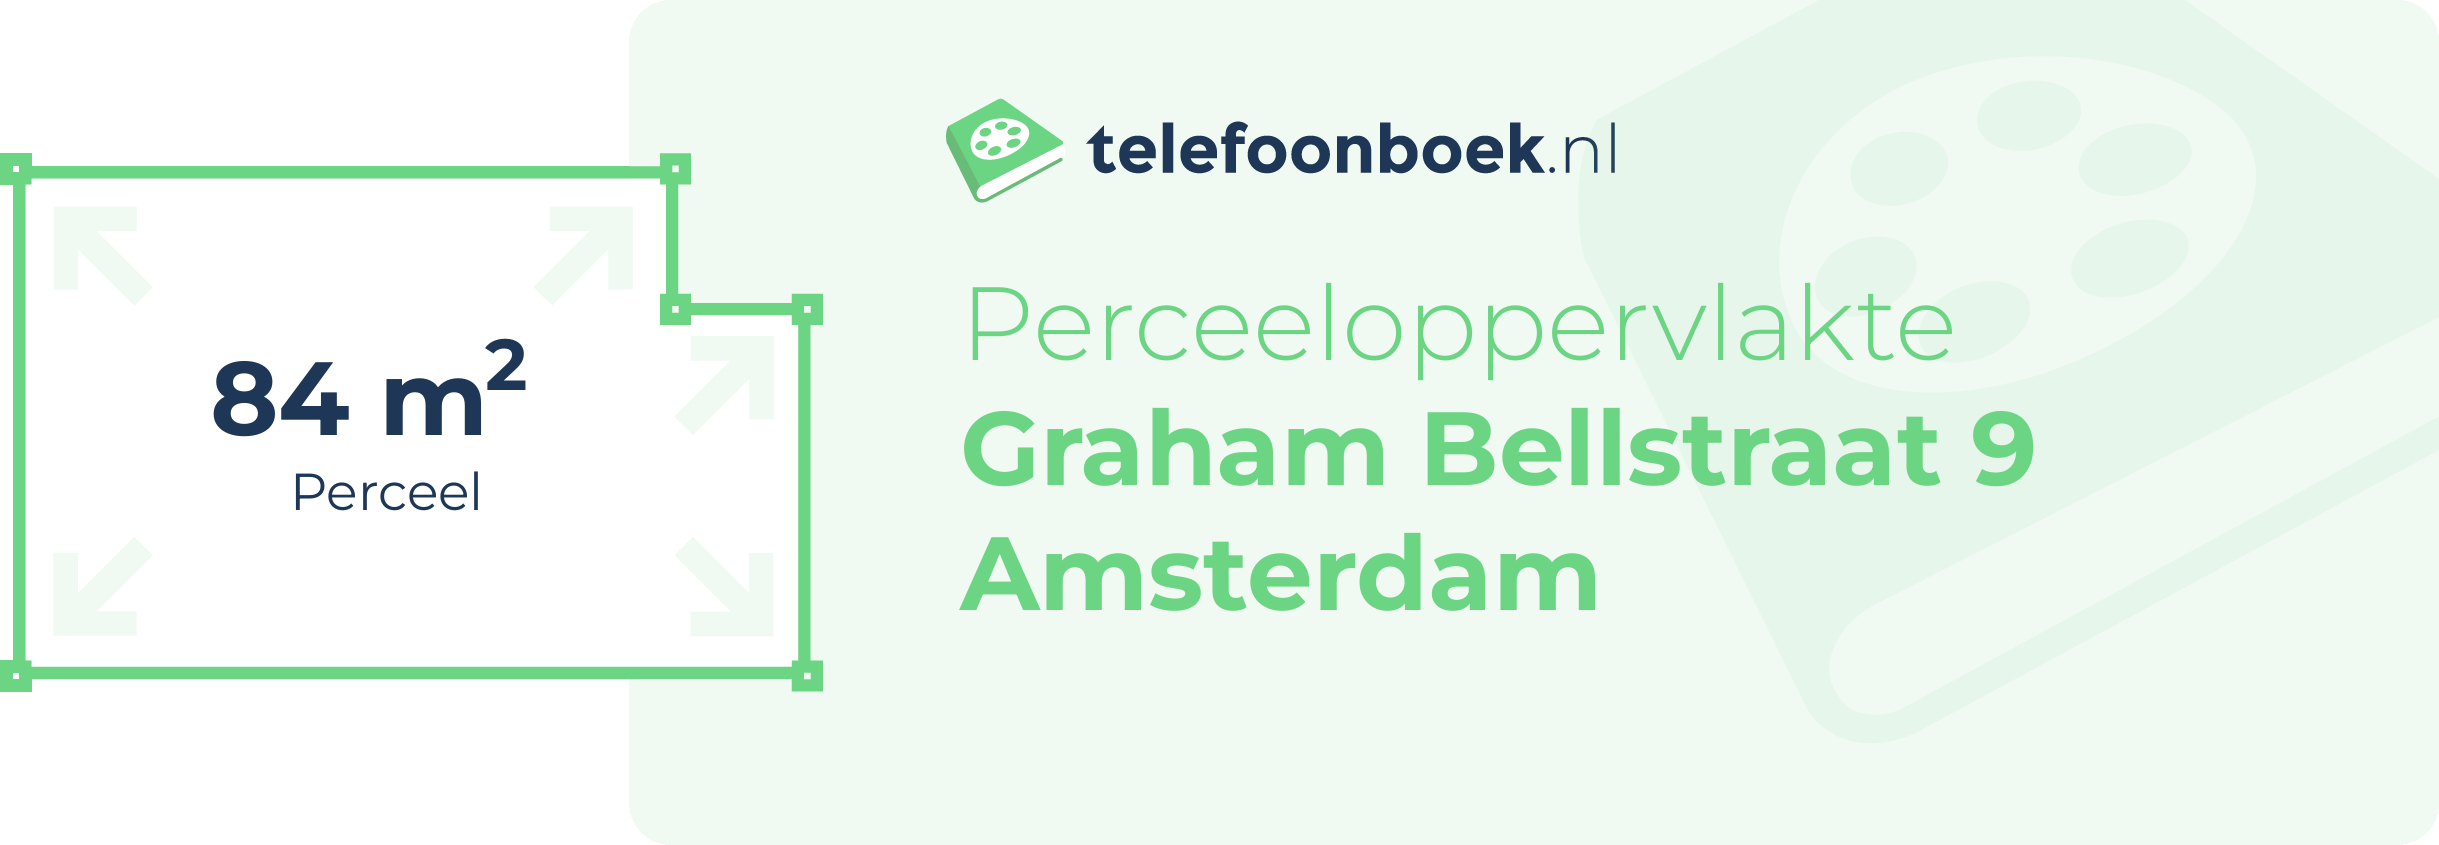 Perceeloppervlakte Graham Bellstraat 9 Amsterdam